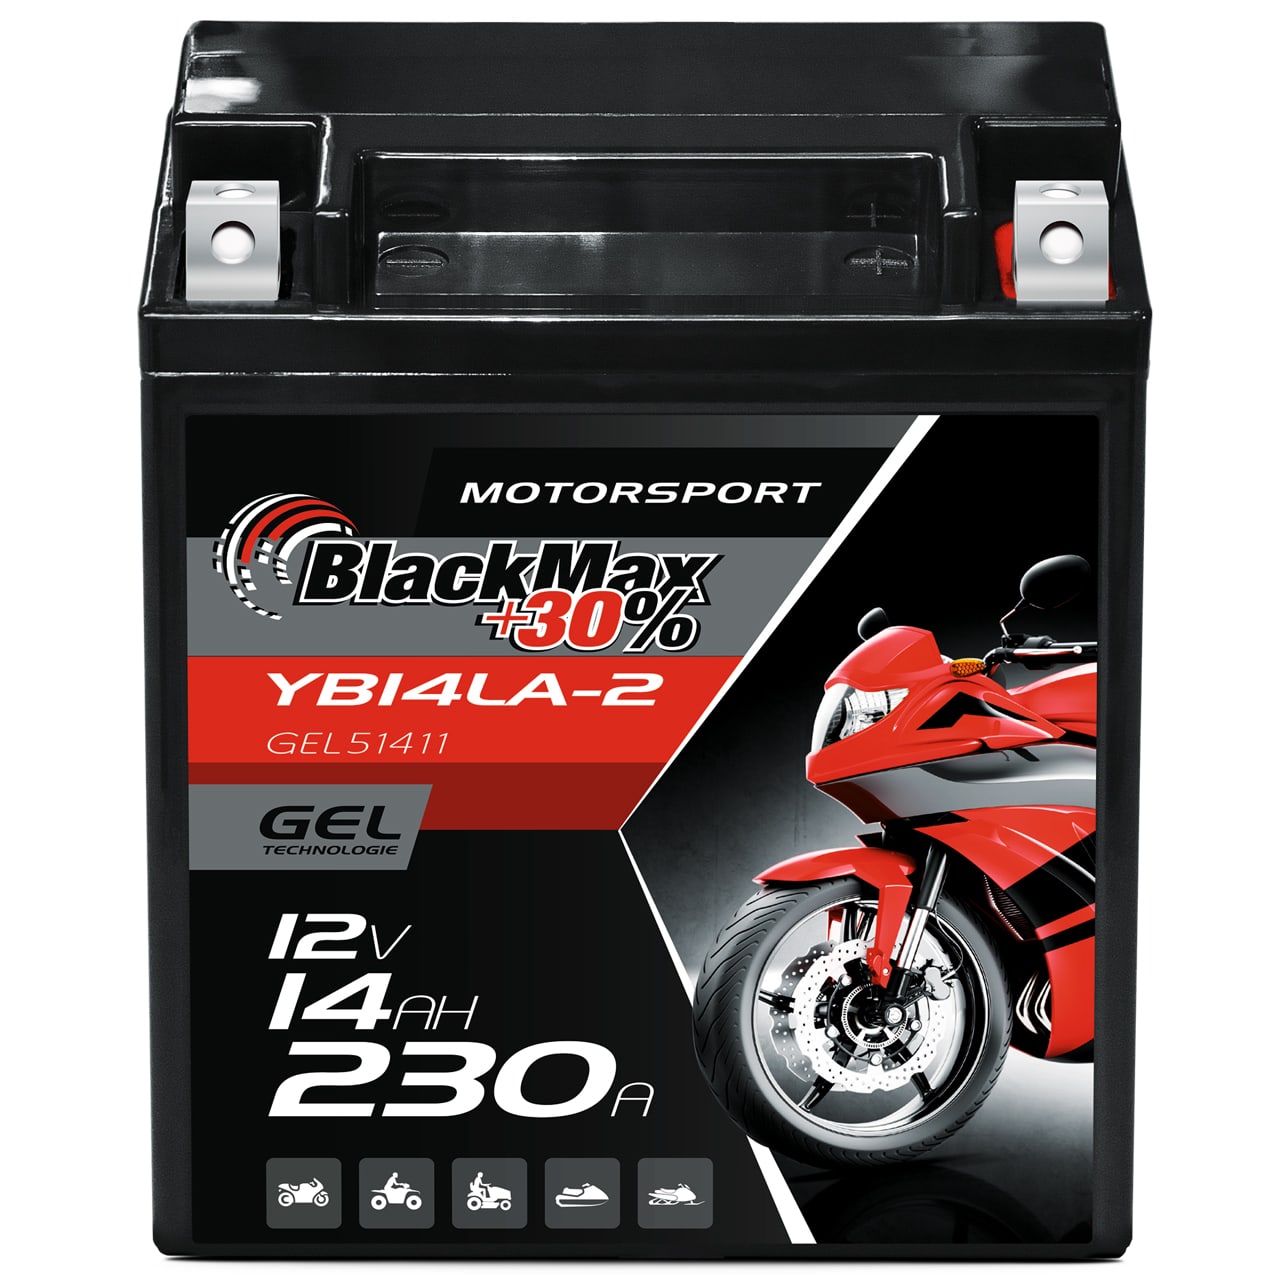 BlackMax YB14LA-2 Motorradbatterie GEL 12V 14Ah CB14LA-2